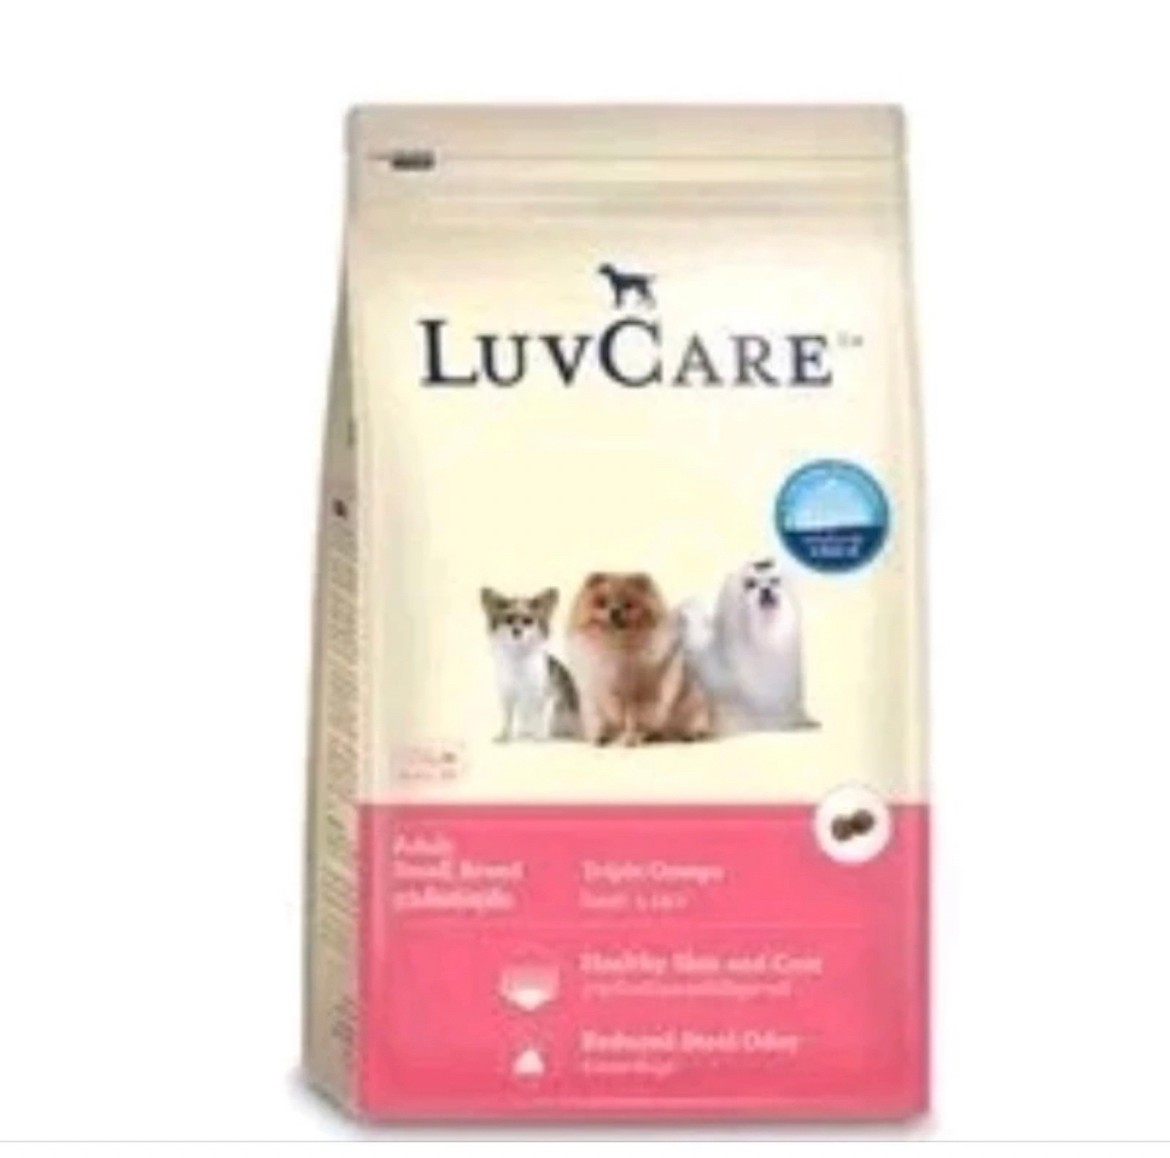 อาหารสุนัขแบบแห้ง (1 ถุง)Dr. Luvcare อาหารสุนัข พันธุ์เล็ก เม็ดเล็ก 2kg มี 5 รสชาติ